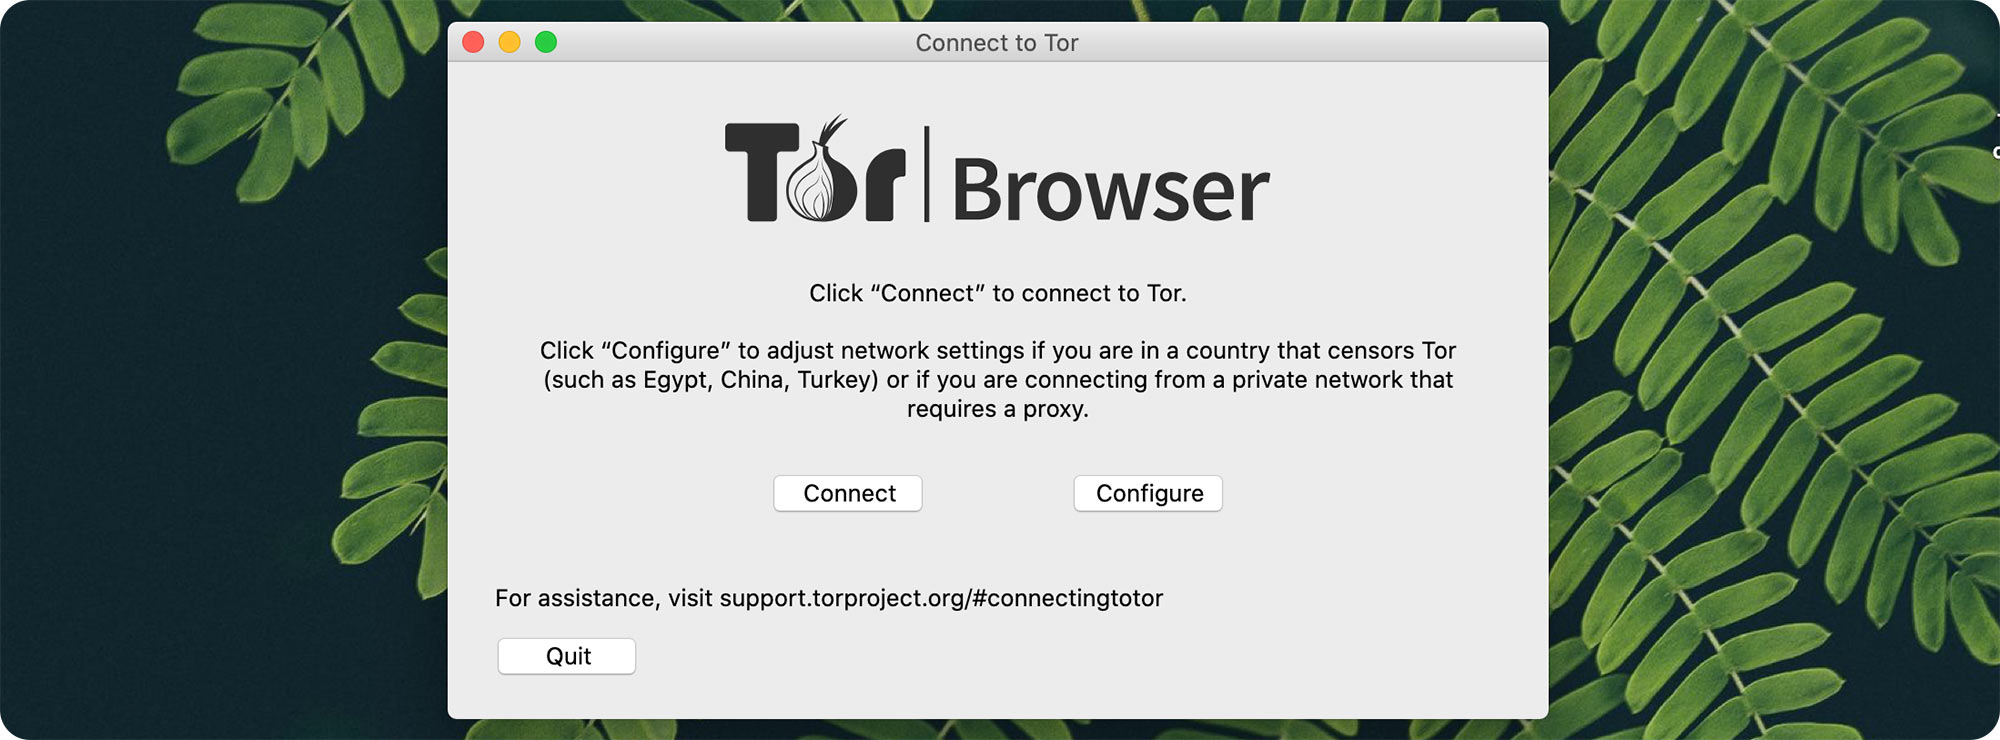 Как настроить tor browser на mac gydra тор браузер rus вход на гидру